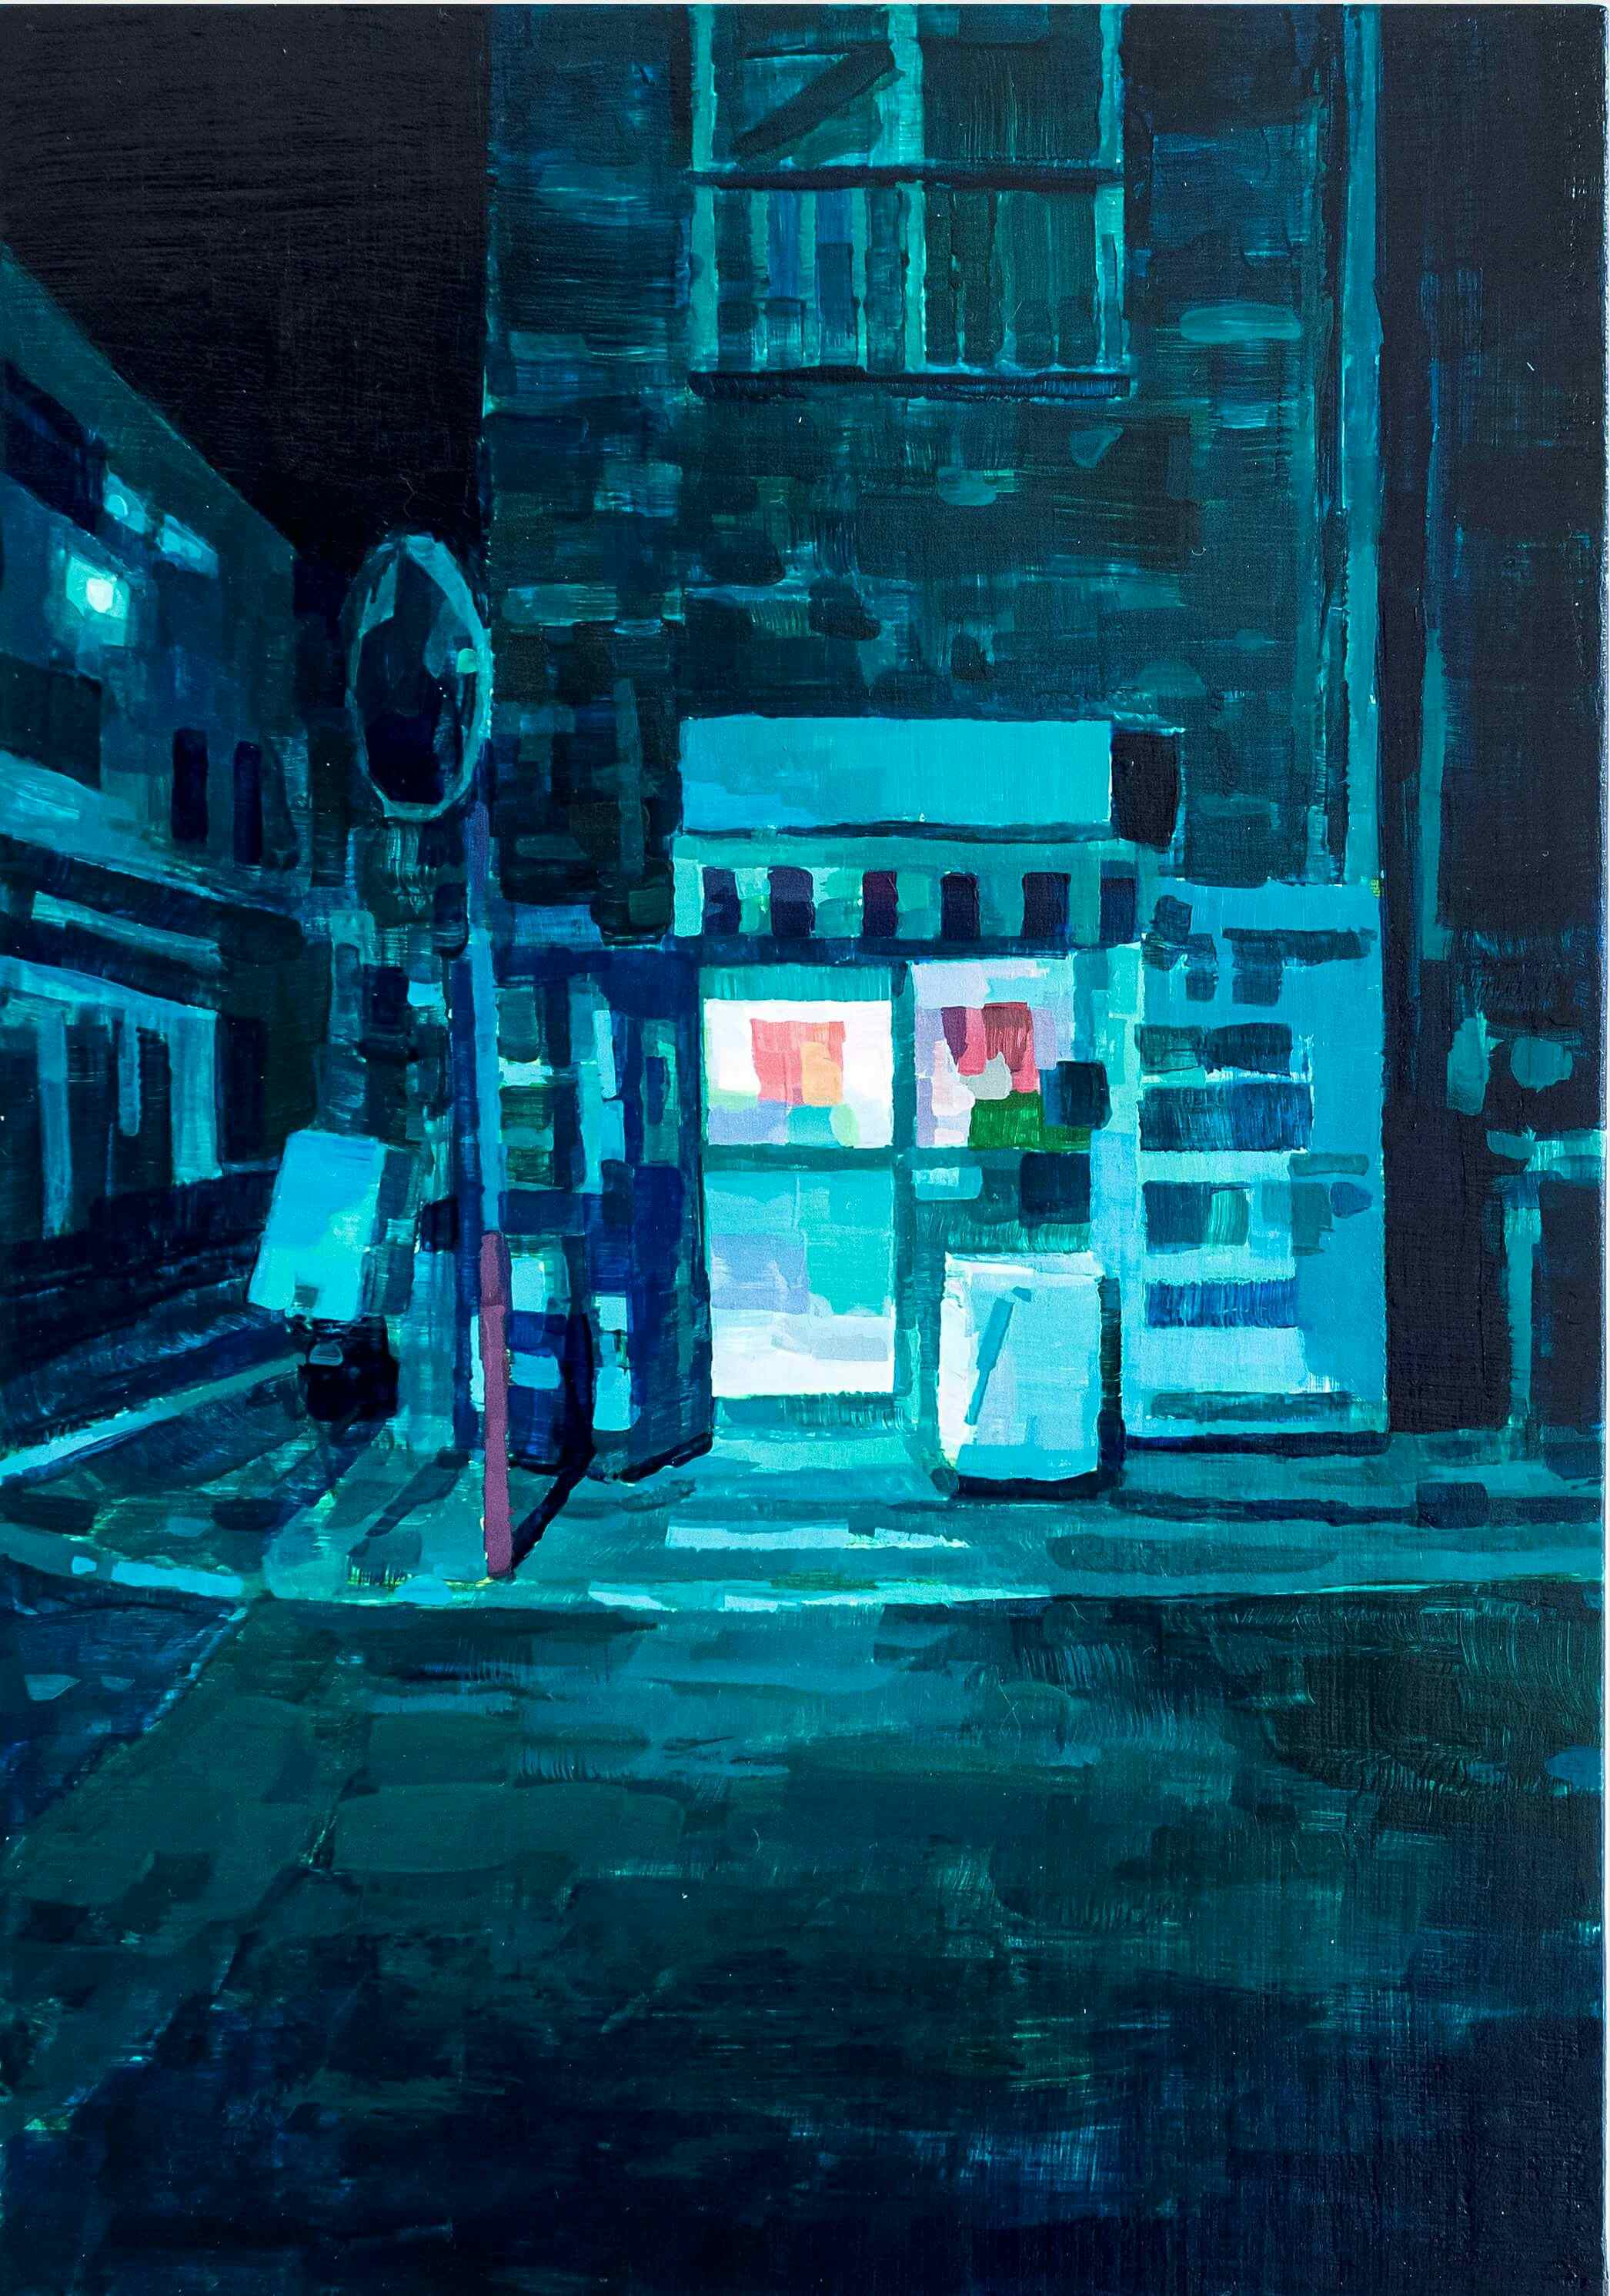 Night Shop by Keita Morimoto